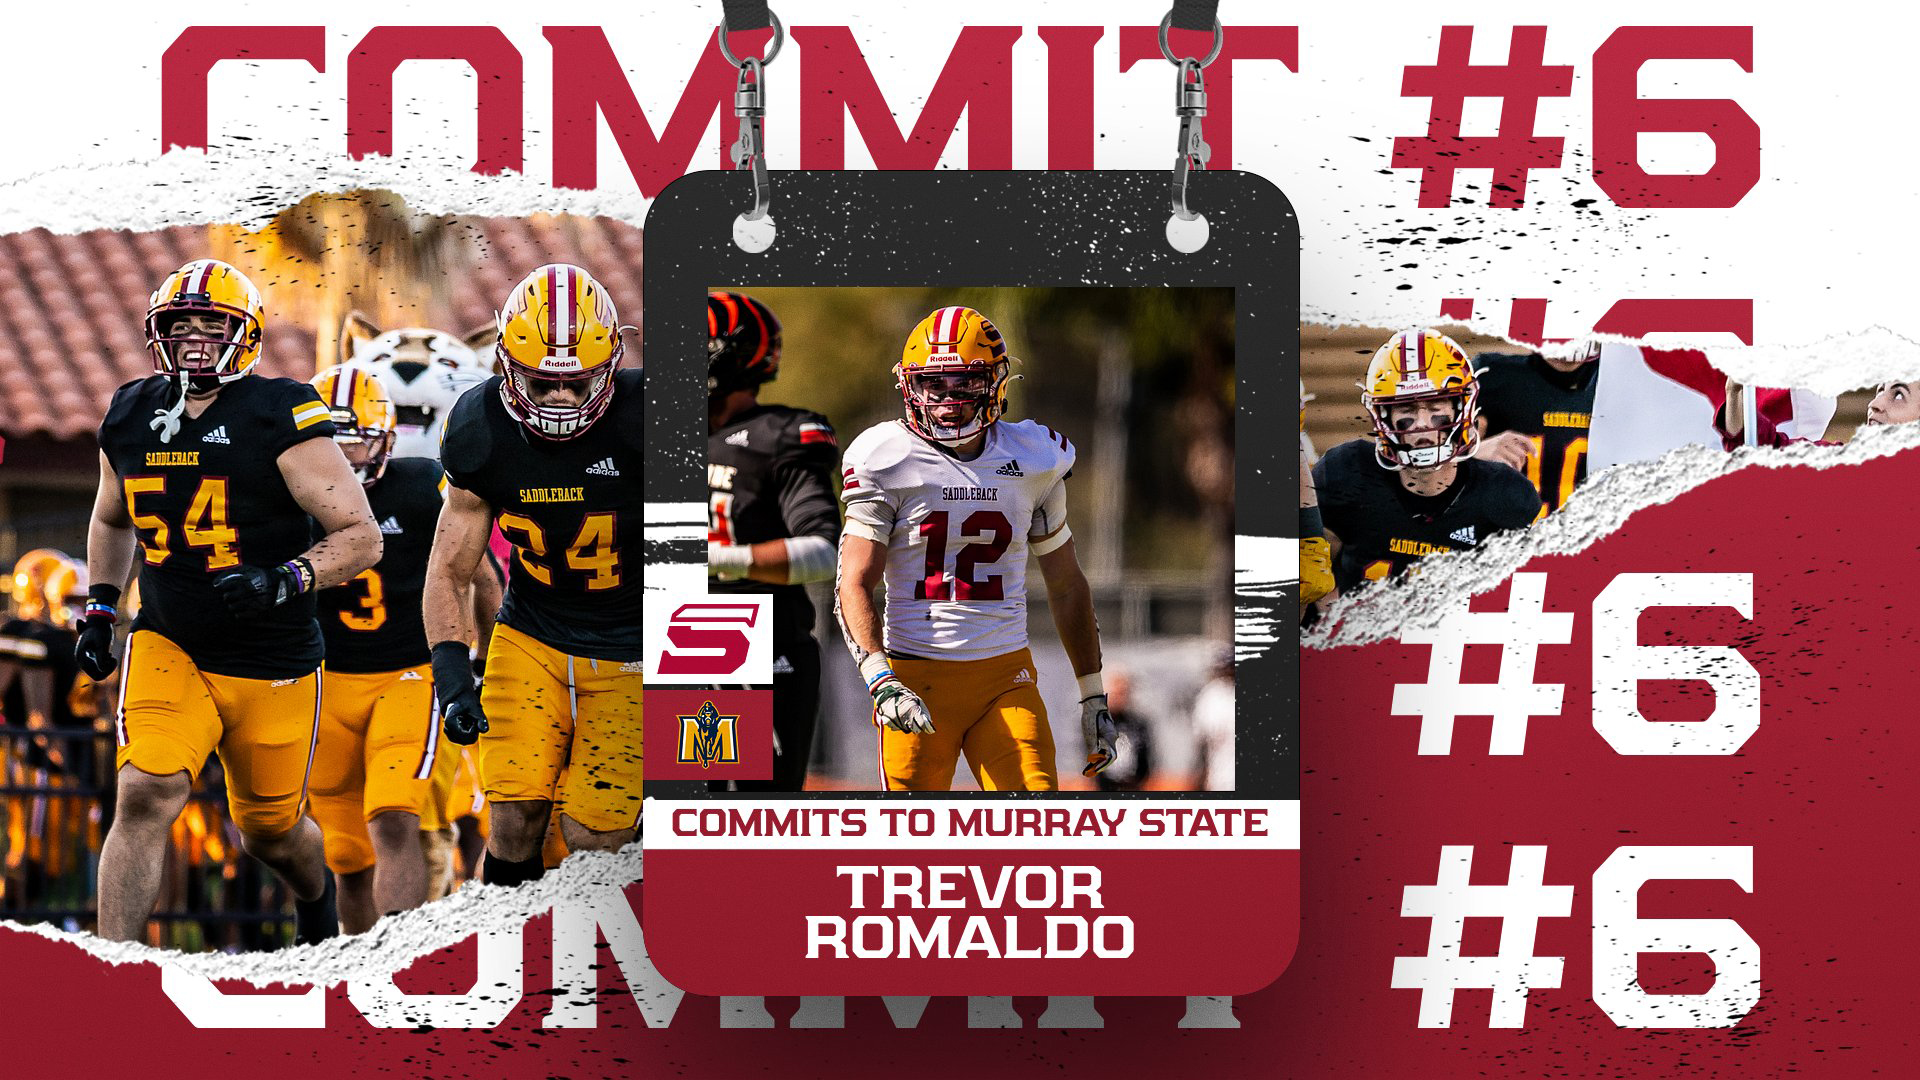 Romaldo is commit #6